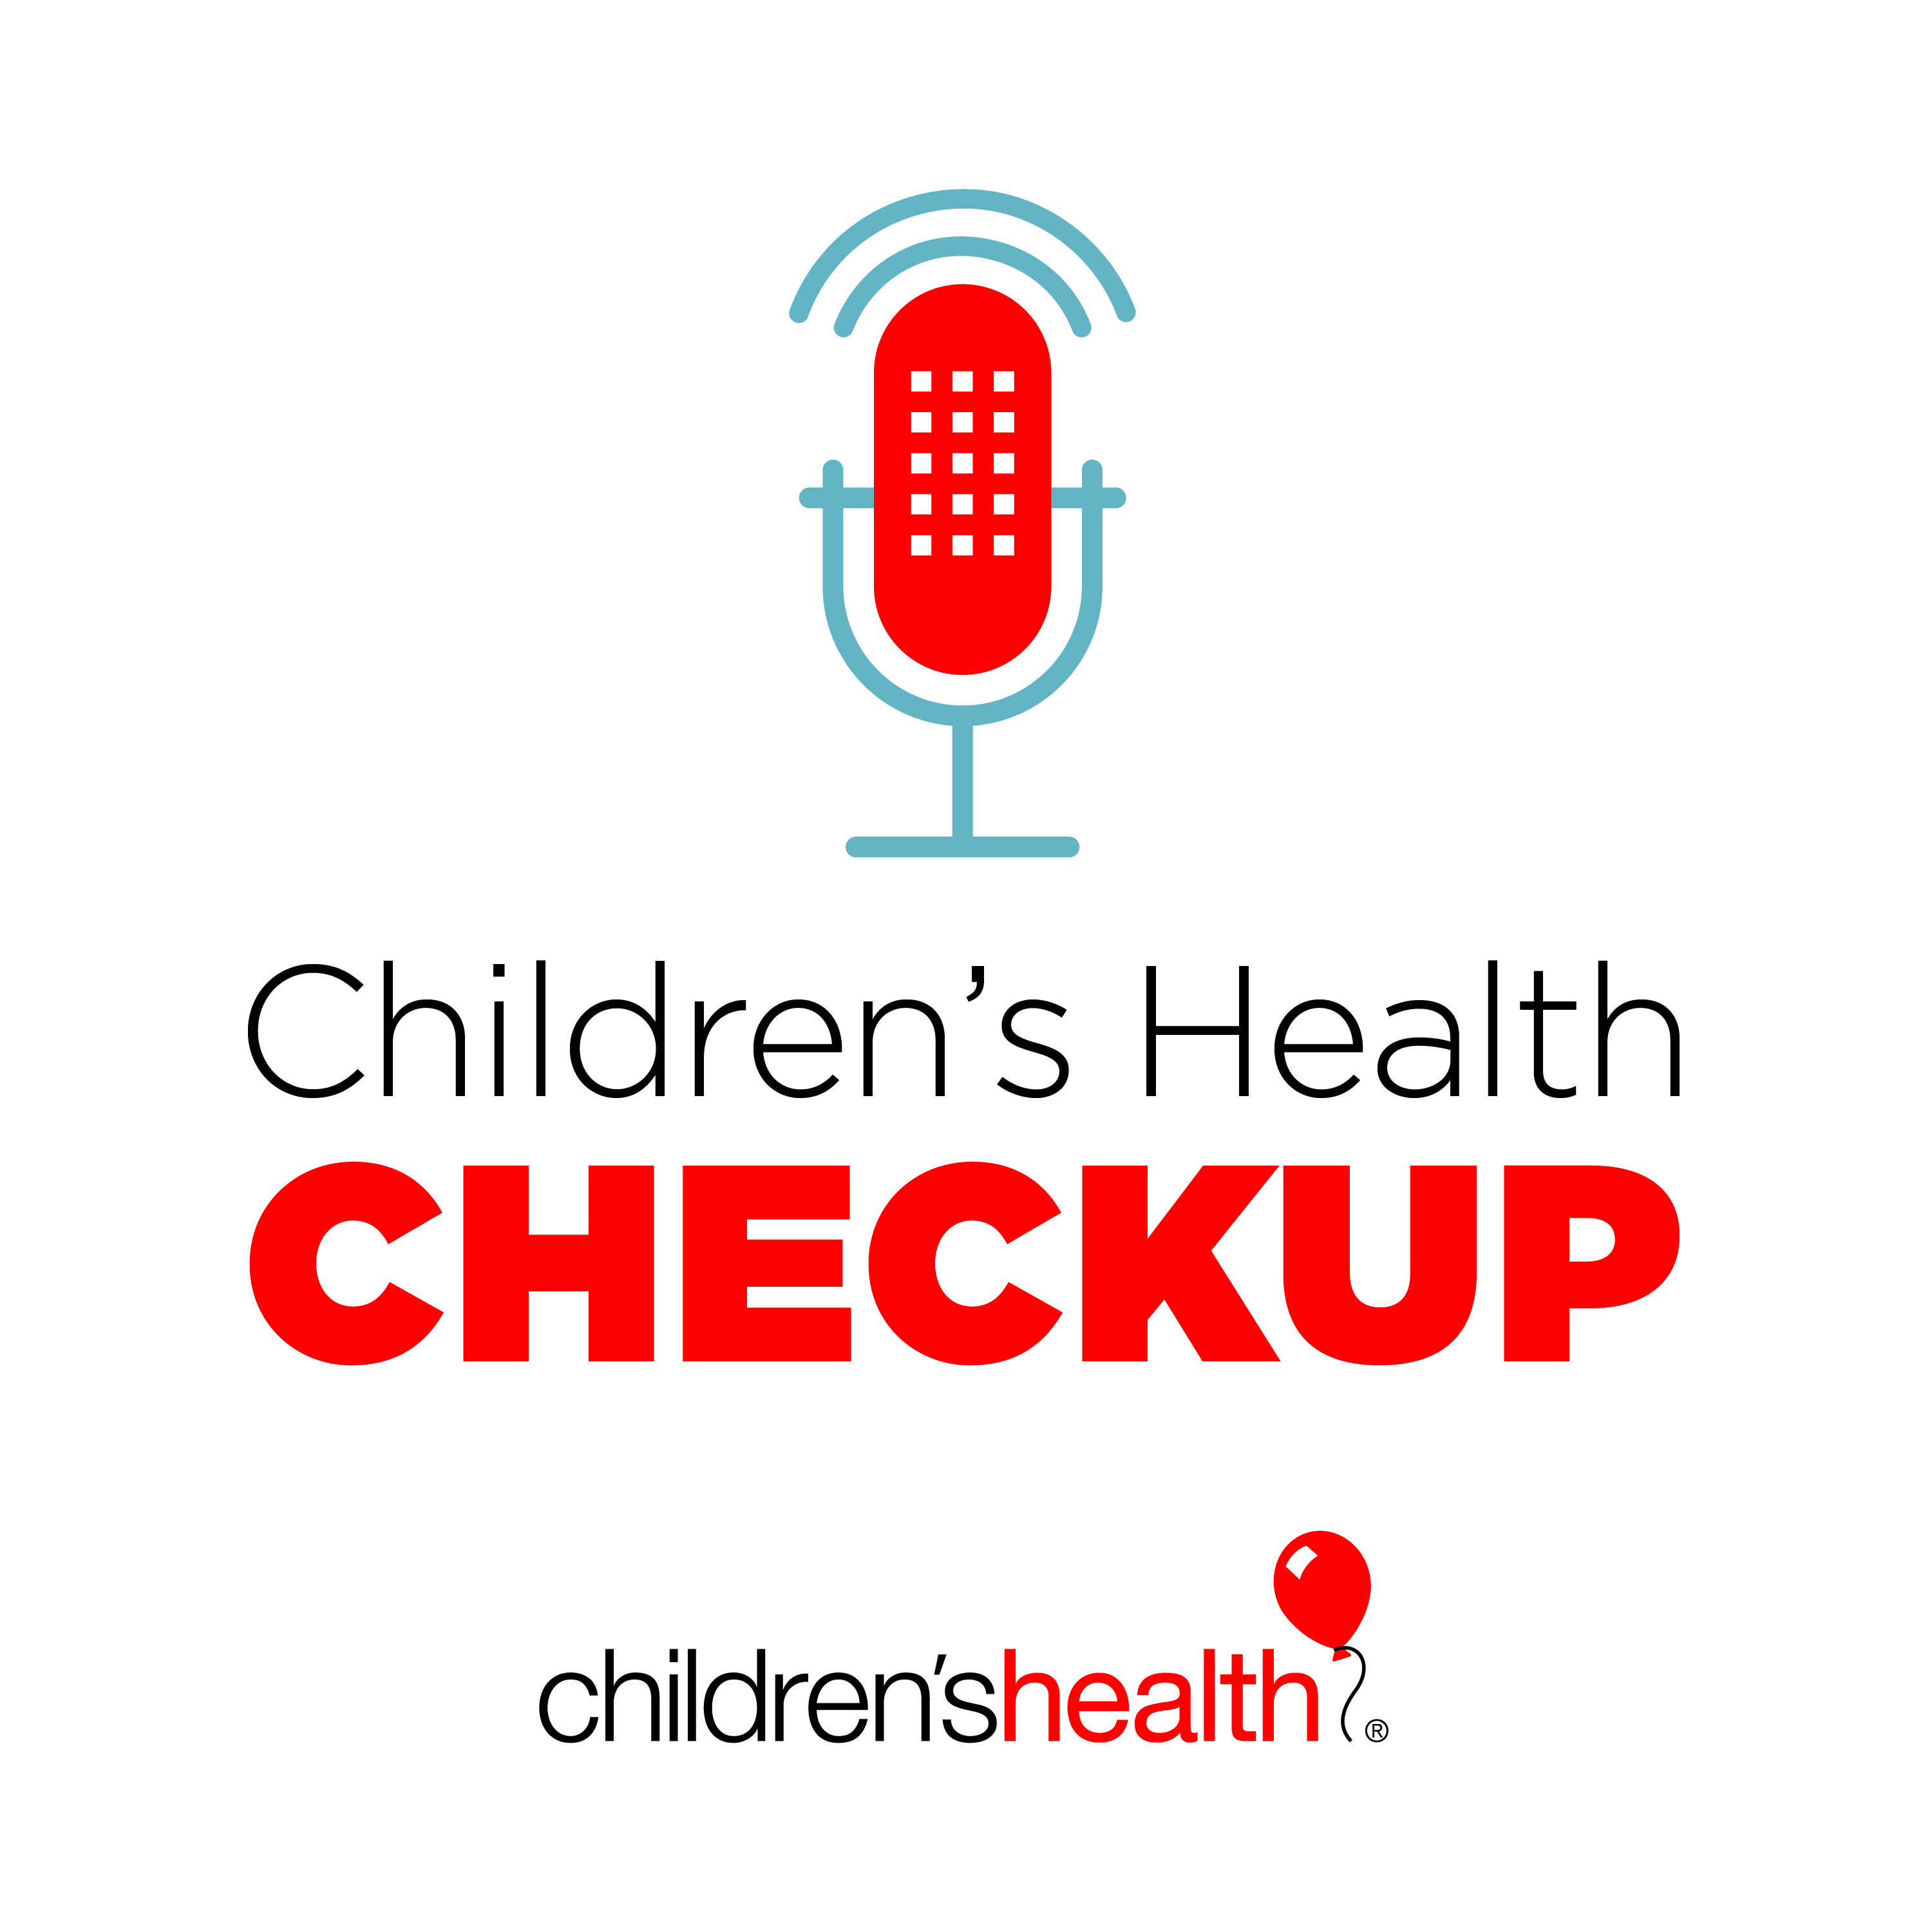 Children’s Health Checkup